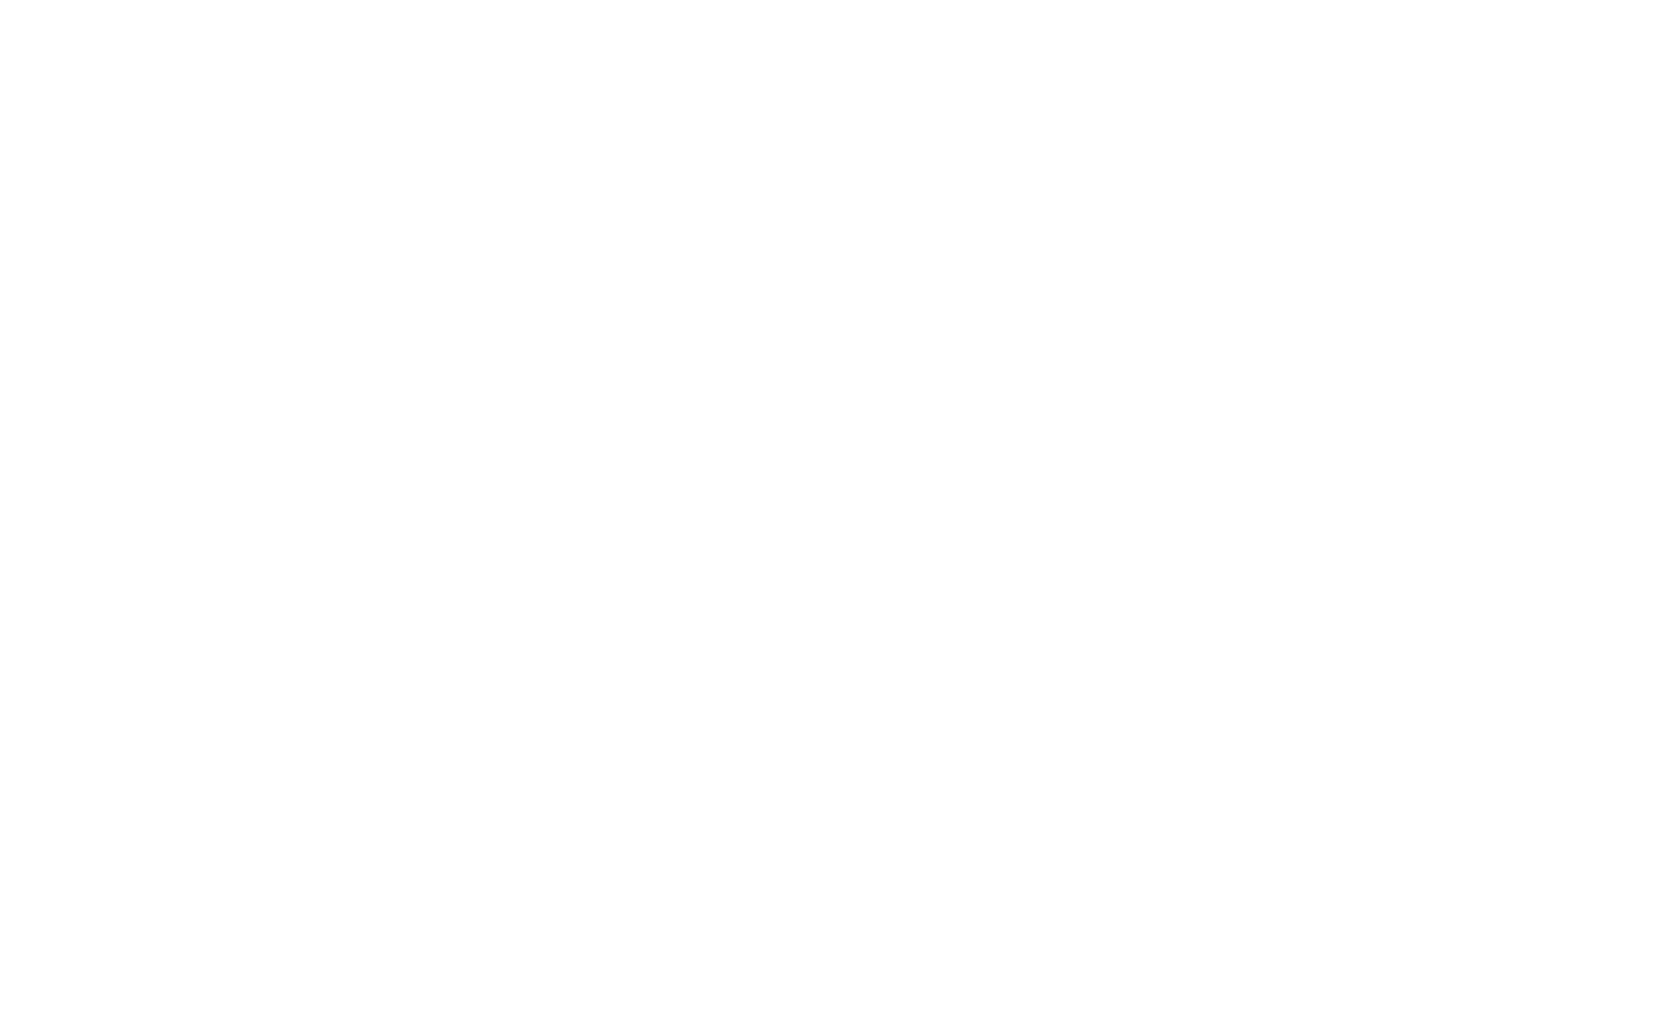 Innovative Academy